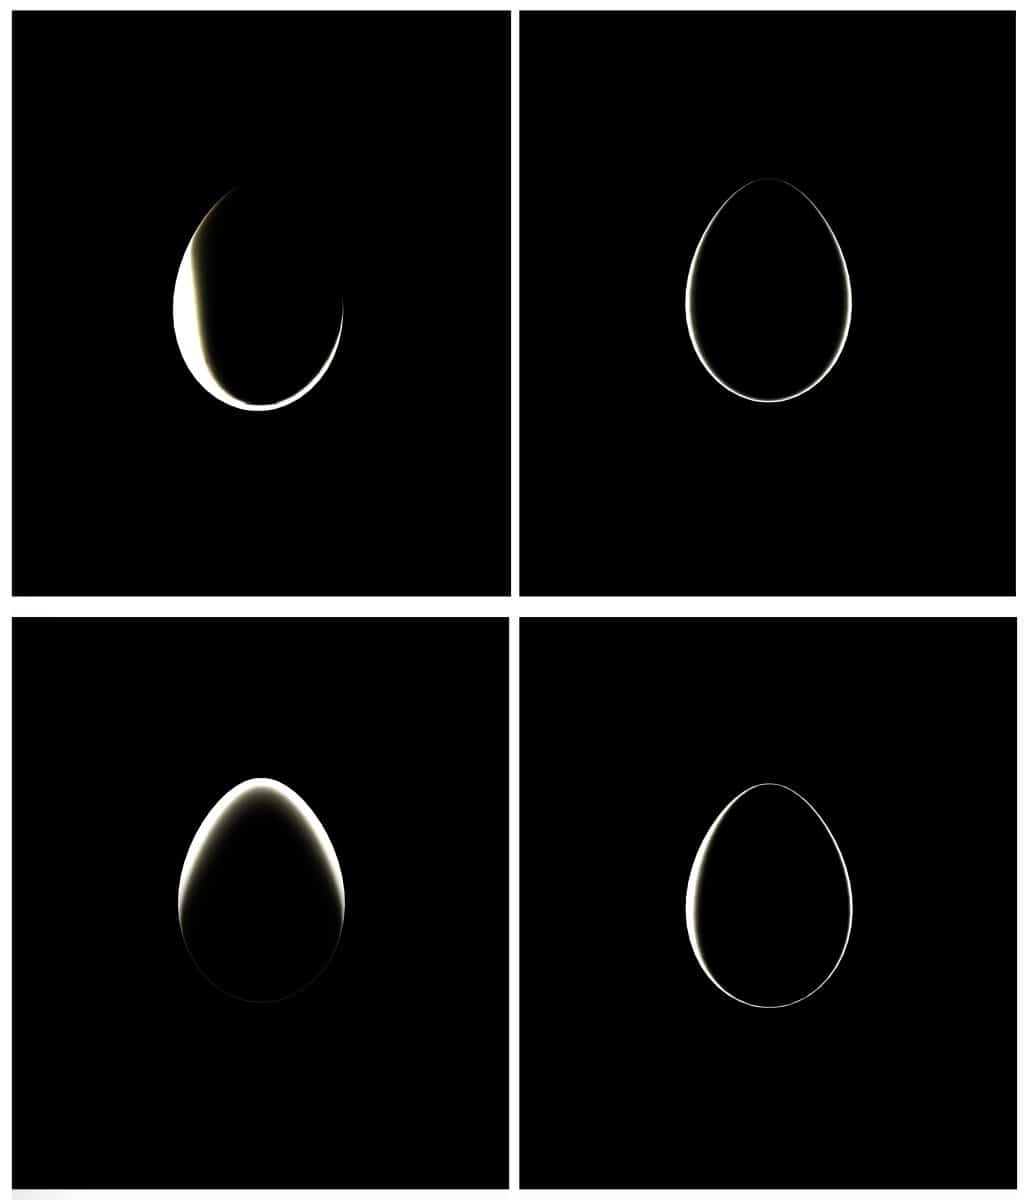 4 images of bugatti NFT egg black background light outline